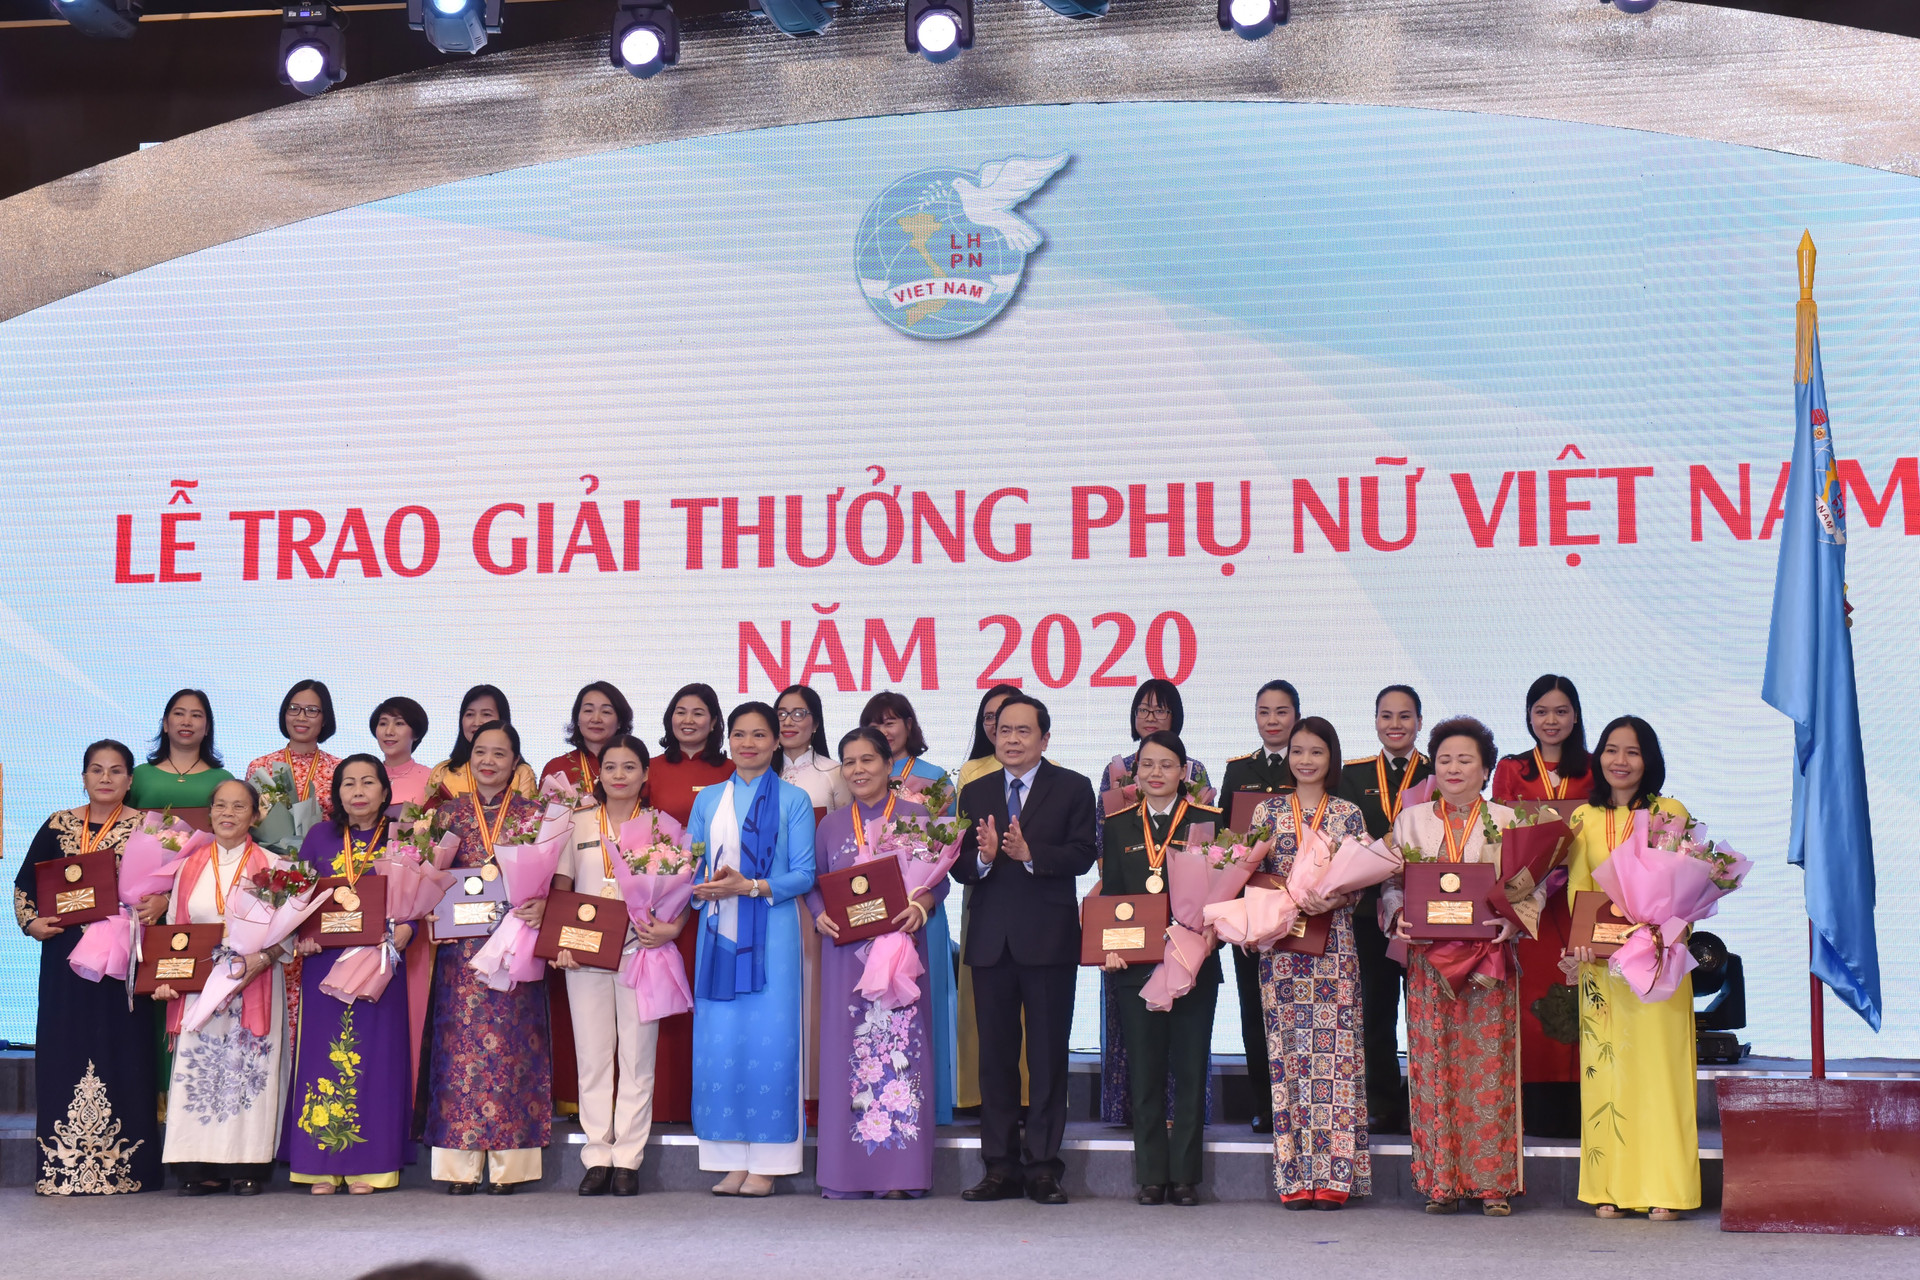 Chủ tịch Trần Thanh Mẫn trao tặng bằng khen cho tập thể và cá nhân đạt giải thưởng phụ nữ Việt Nam năm 2020. 